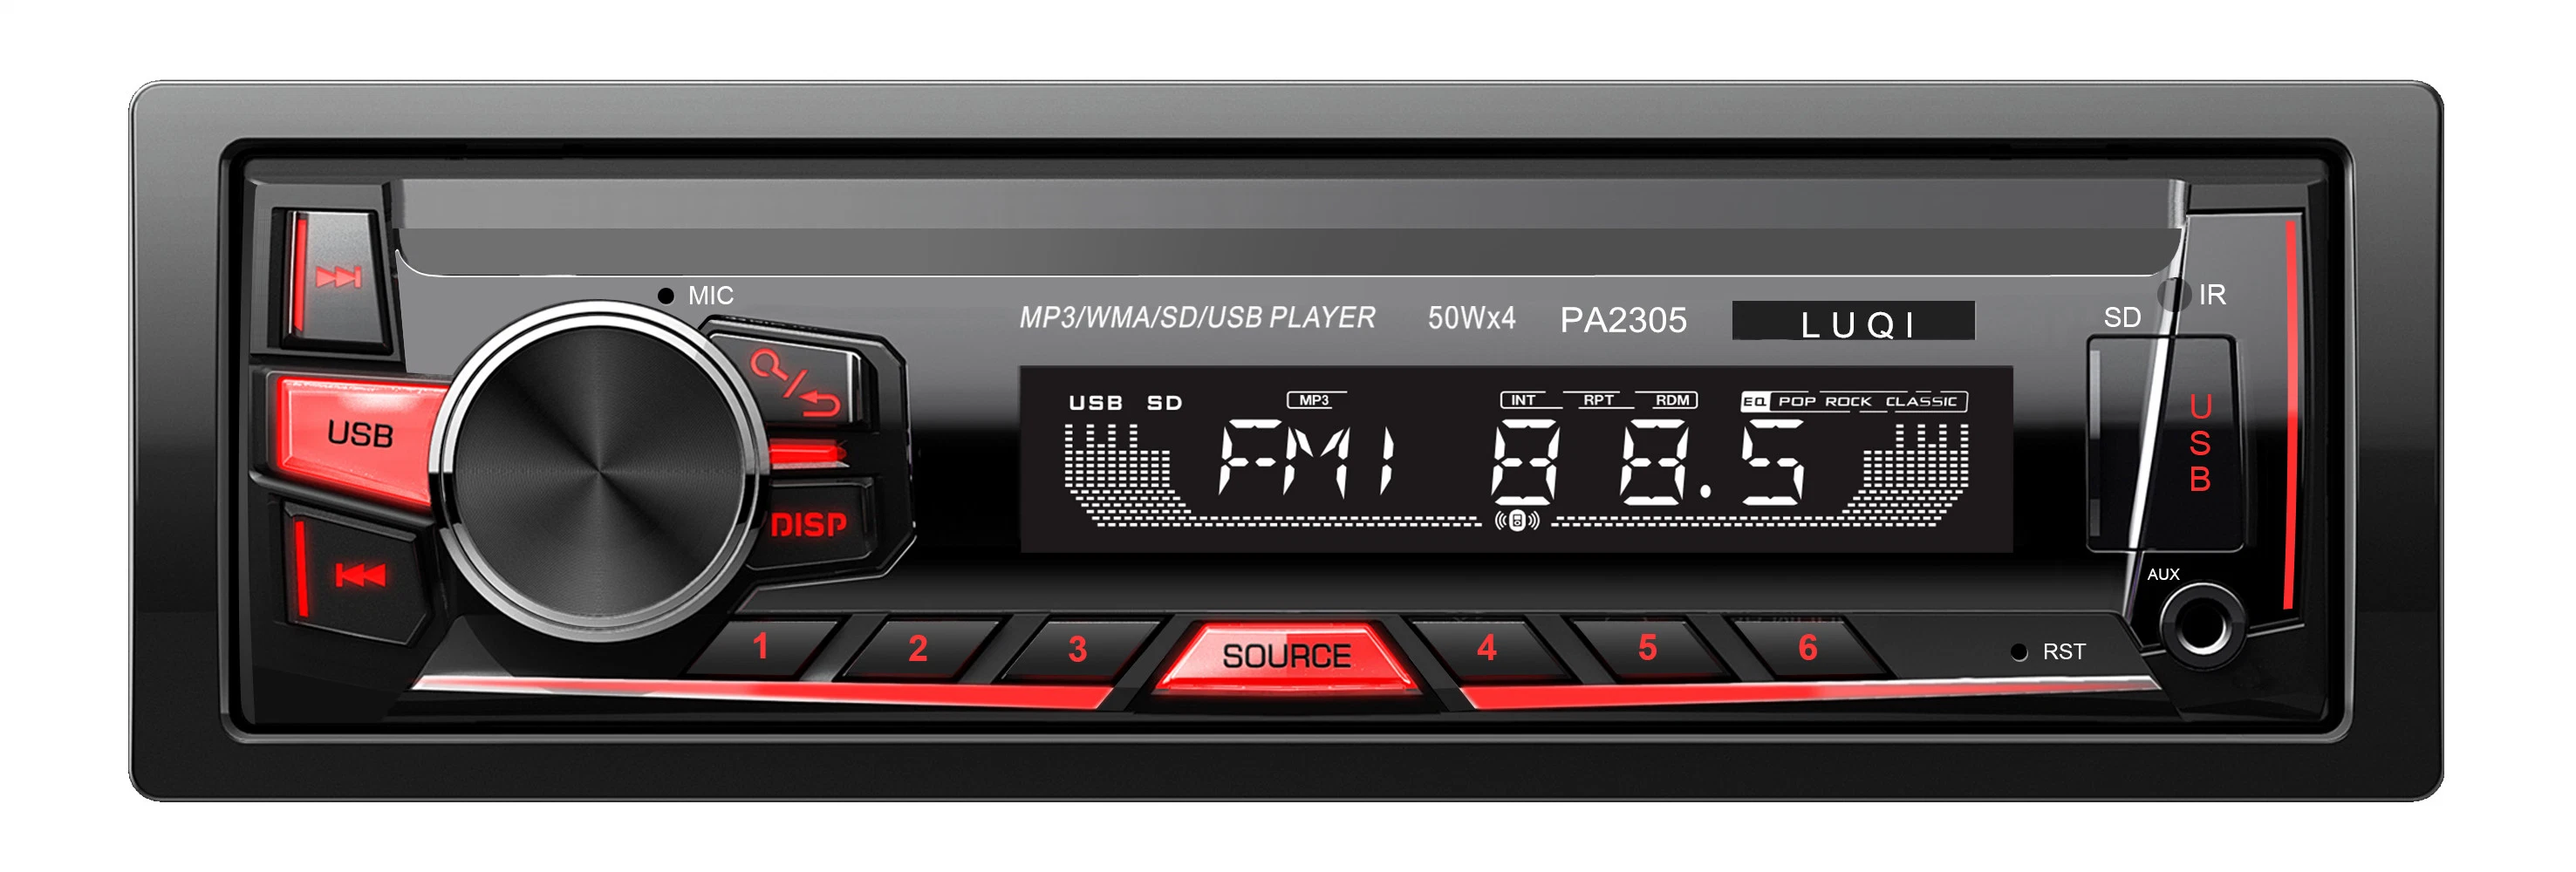 Colores Luz Radio estéreo para coche MP3 Audio Reproductor Multimedia.